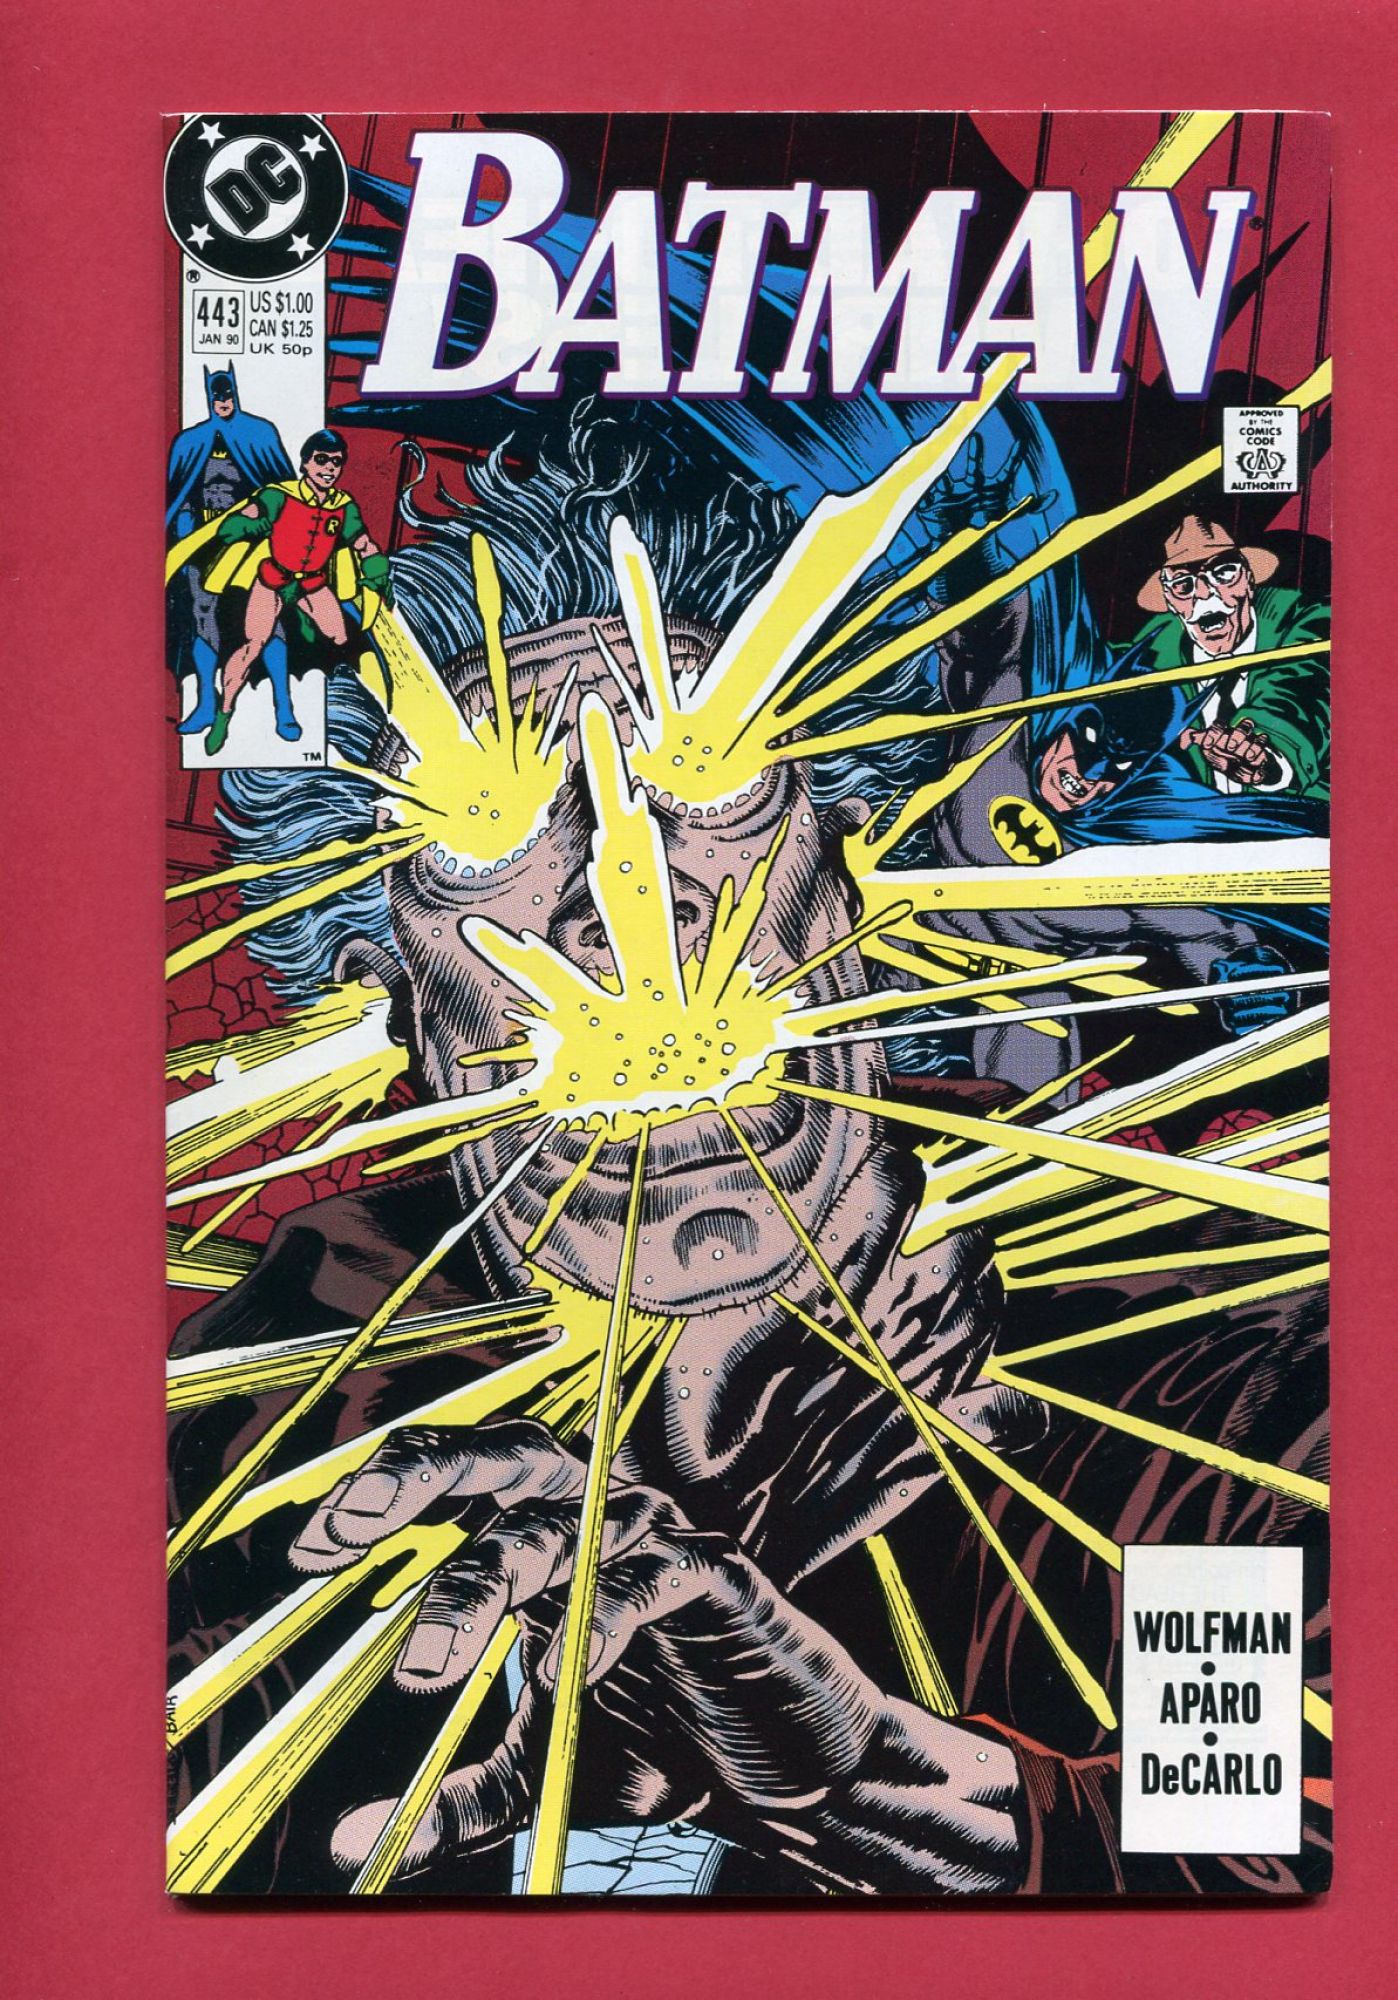 Batman #433, May 1989, 9.4 NM